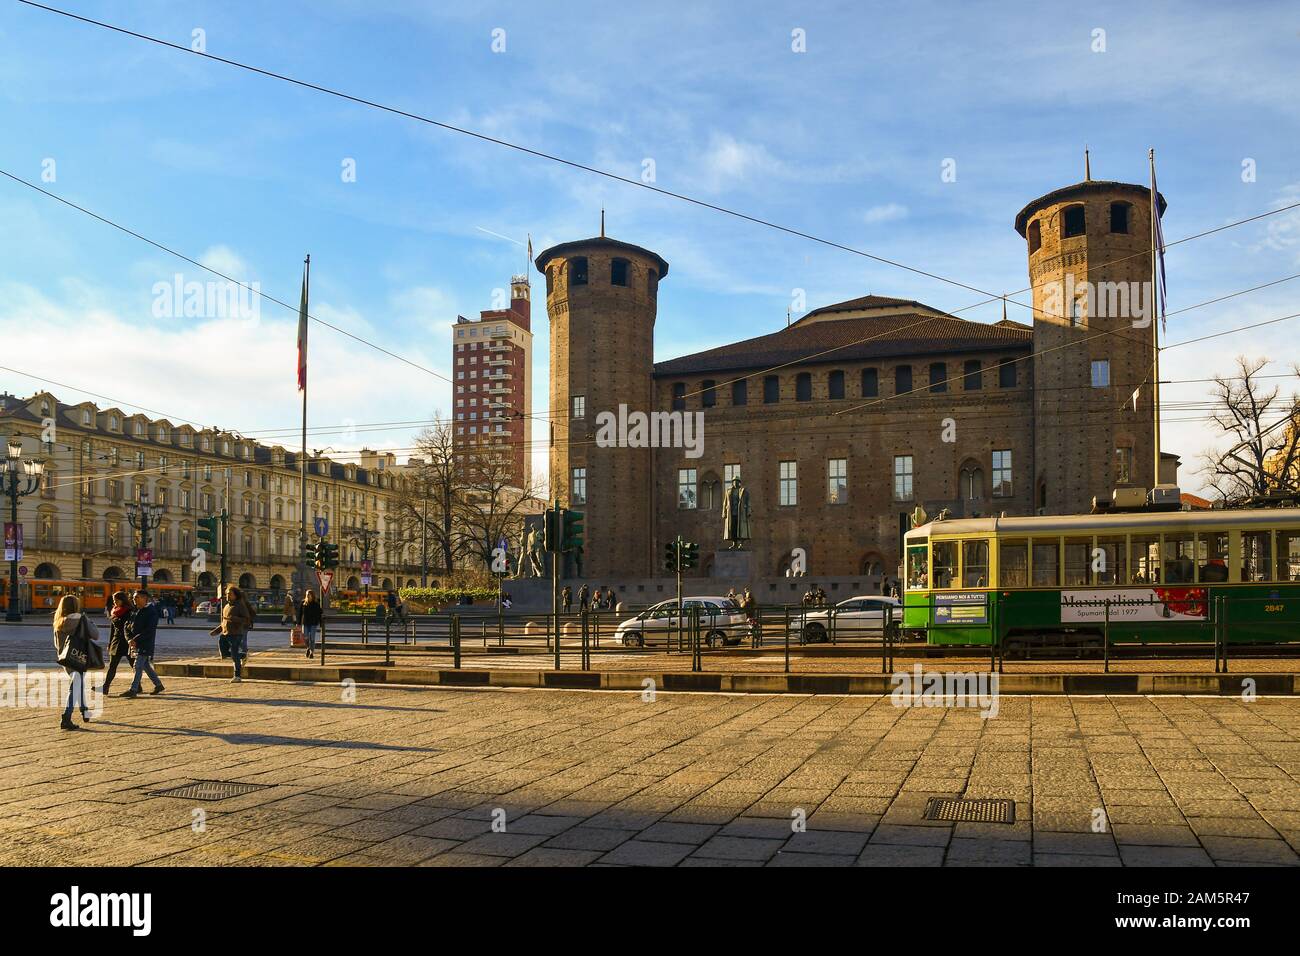 Historische Straßenbahn vor der mittelalterlichen Burg Casaforte degli Acaja mit dem Wolkenkratzer Torre Littoria im Hintergrund, Piazza Castello, Turin, Piemont, Italien Stockfoto